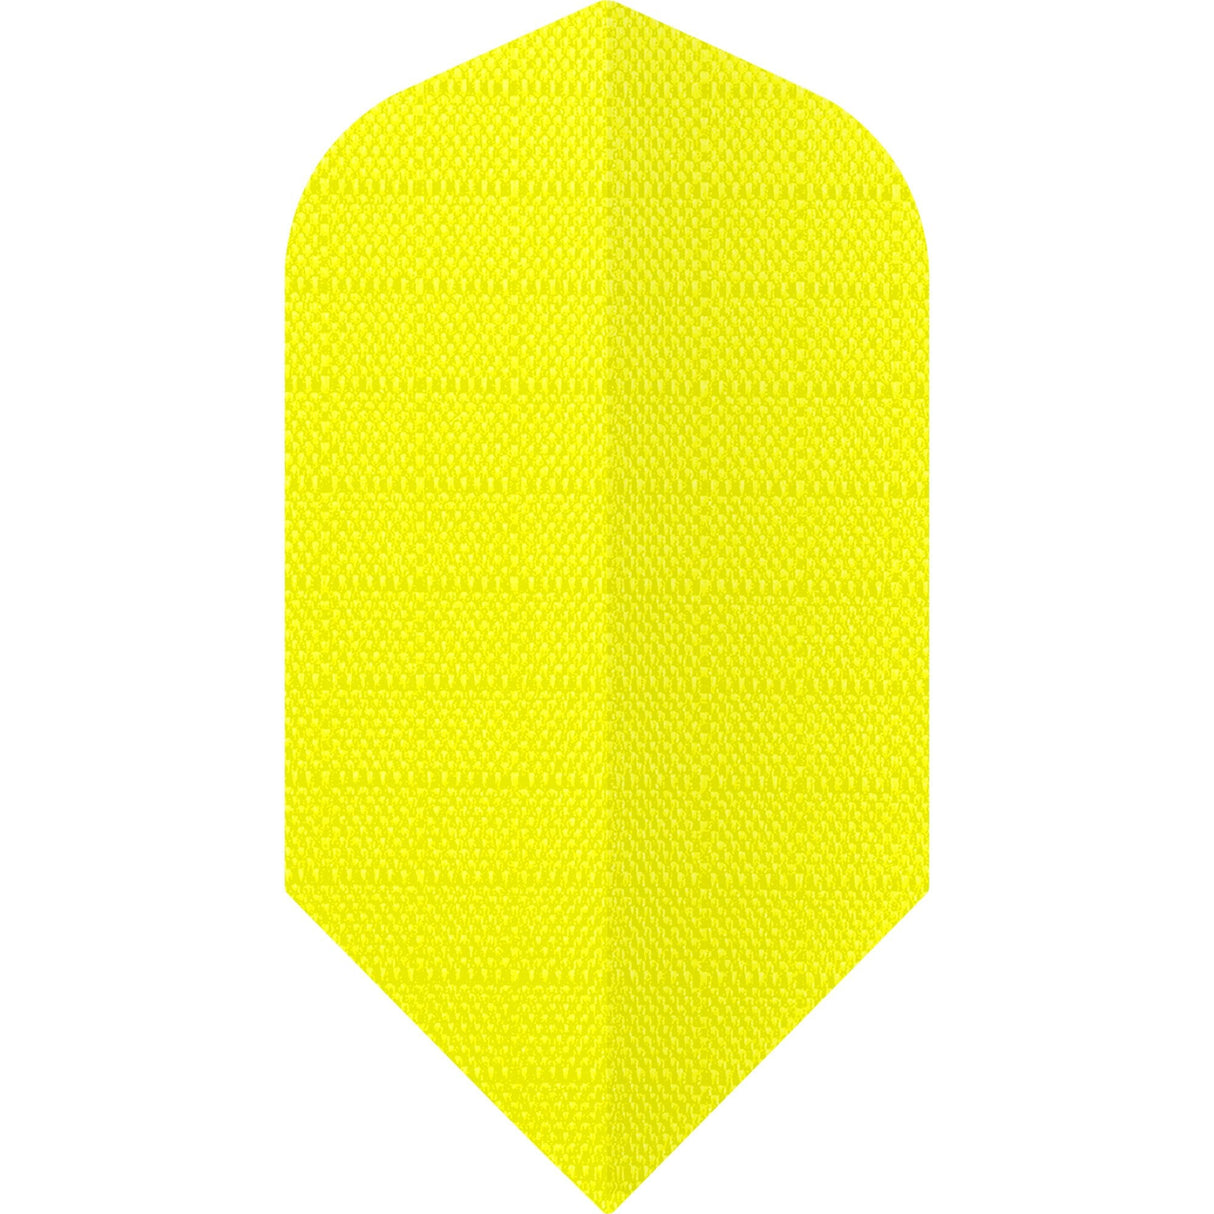 *Designa Dart Flights - Fabric Rip Stop Nylon - Longlife - Slim - Yellow